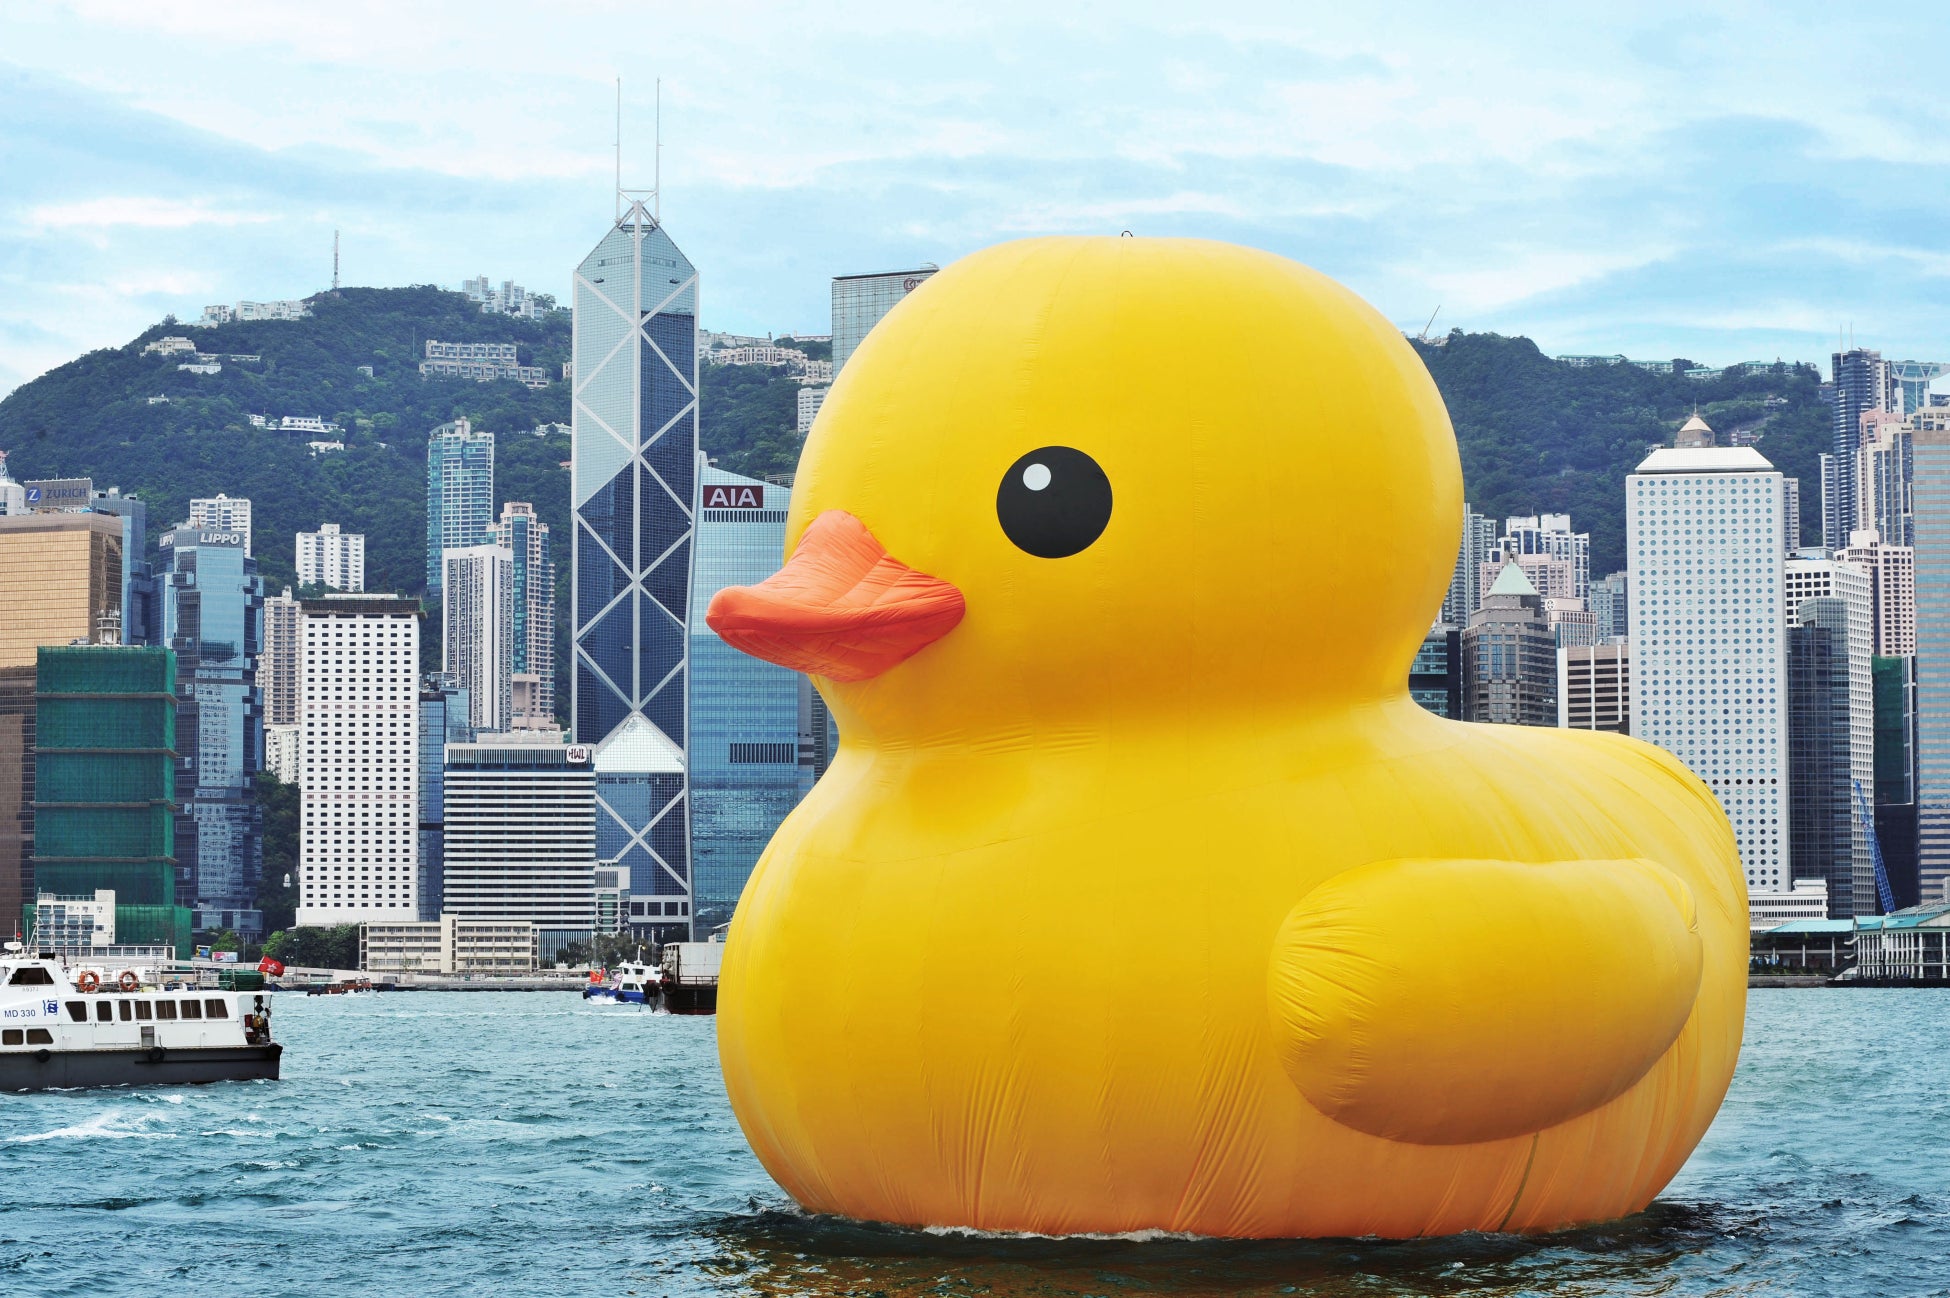 フロレンティン・ホフマン《Rubber Duck》2013, Hong Kong Photo courtesy of AllRightsReserved